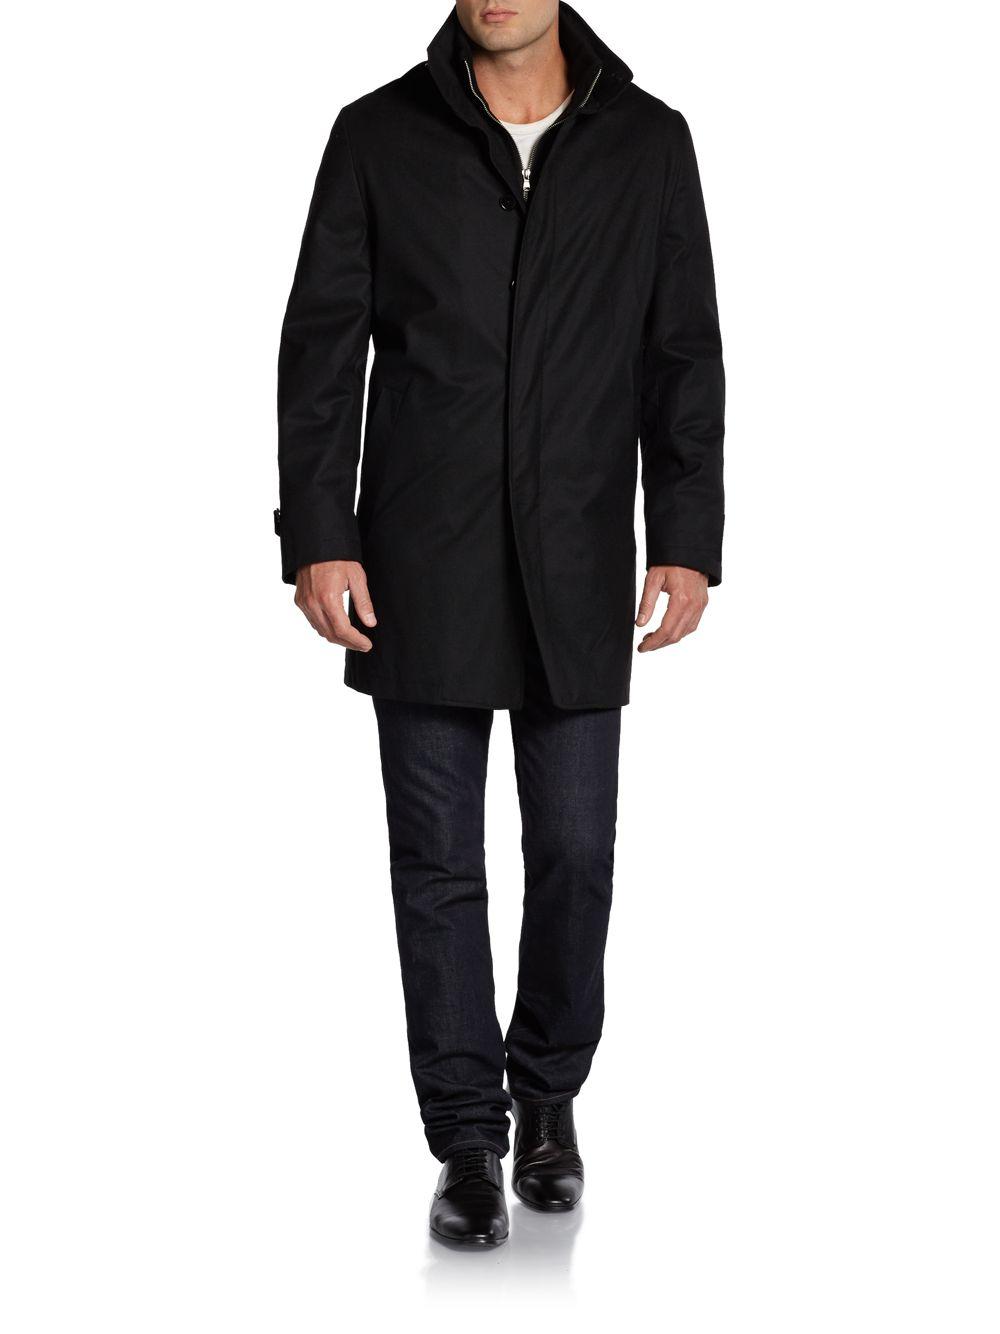 Lyst - Saks Fifth Avenue Black Wool Zip-front Topcoat in Black for Men